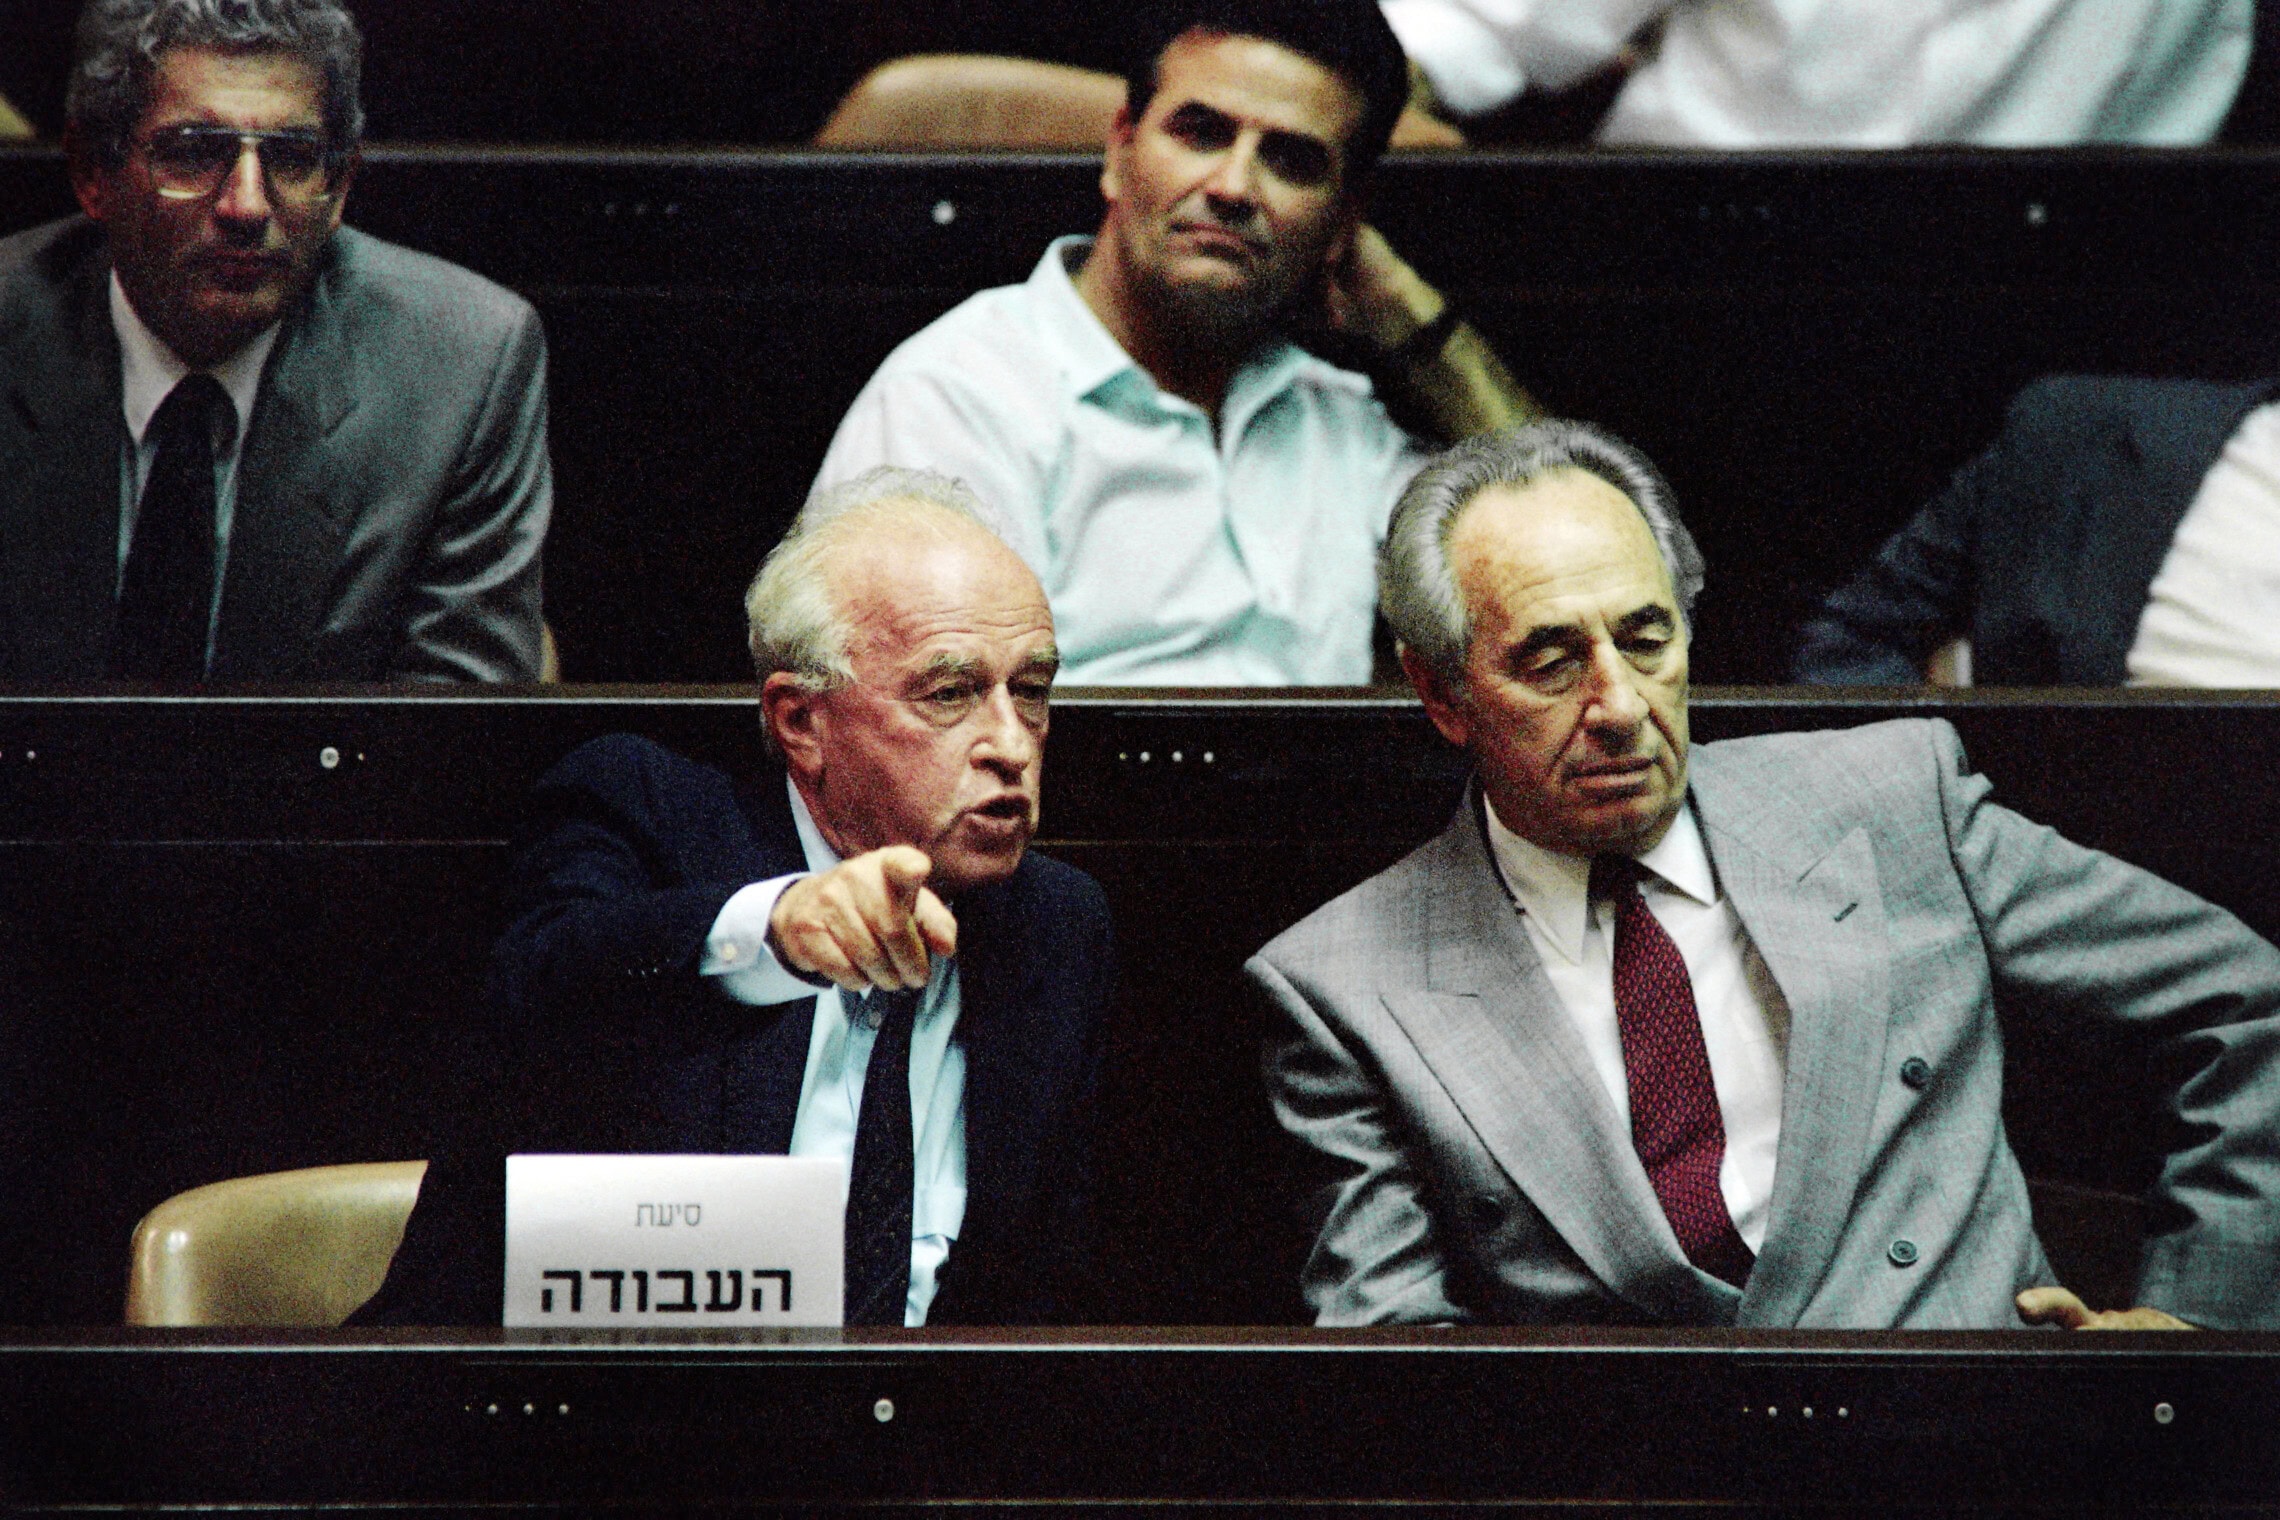 ראש הממשלה יצחק רבין ושר החוץ שמעון פרס בכנסת, 13 ביולי 1992 (צילום: Patrick BAZ / AFP)